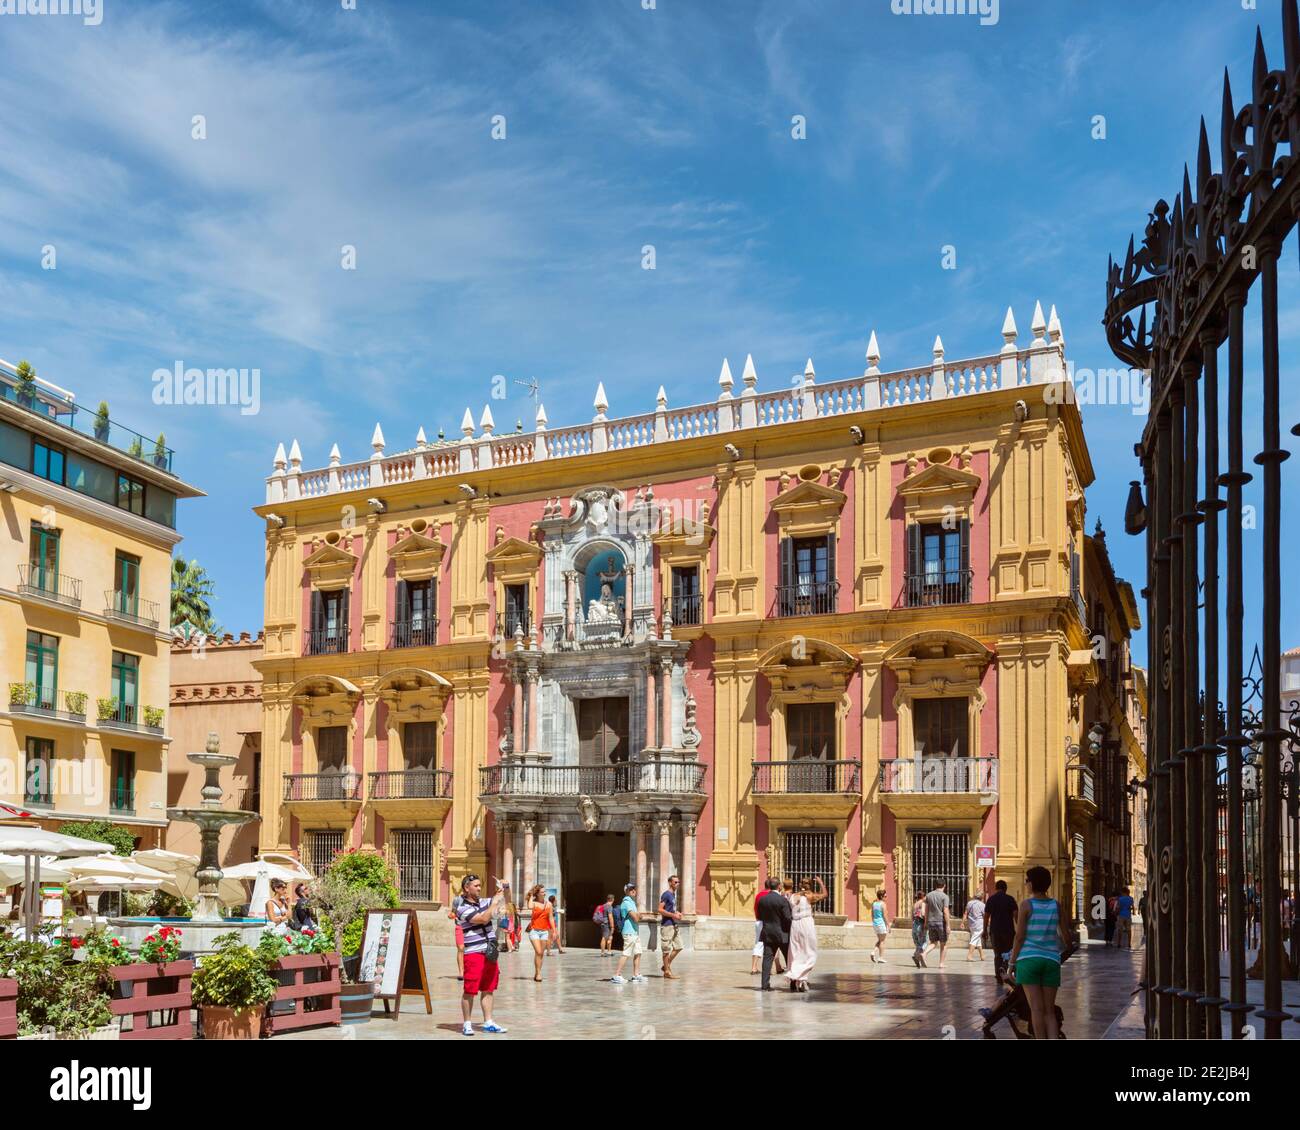 Malaga, Malaga Province, Costa del Sol, Andalusia, southern Spain.  Palacio Episcopal, in Plaza del Obispo. Stock Photo